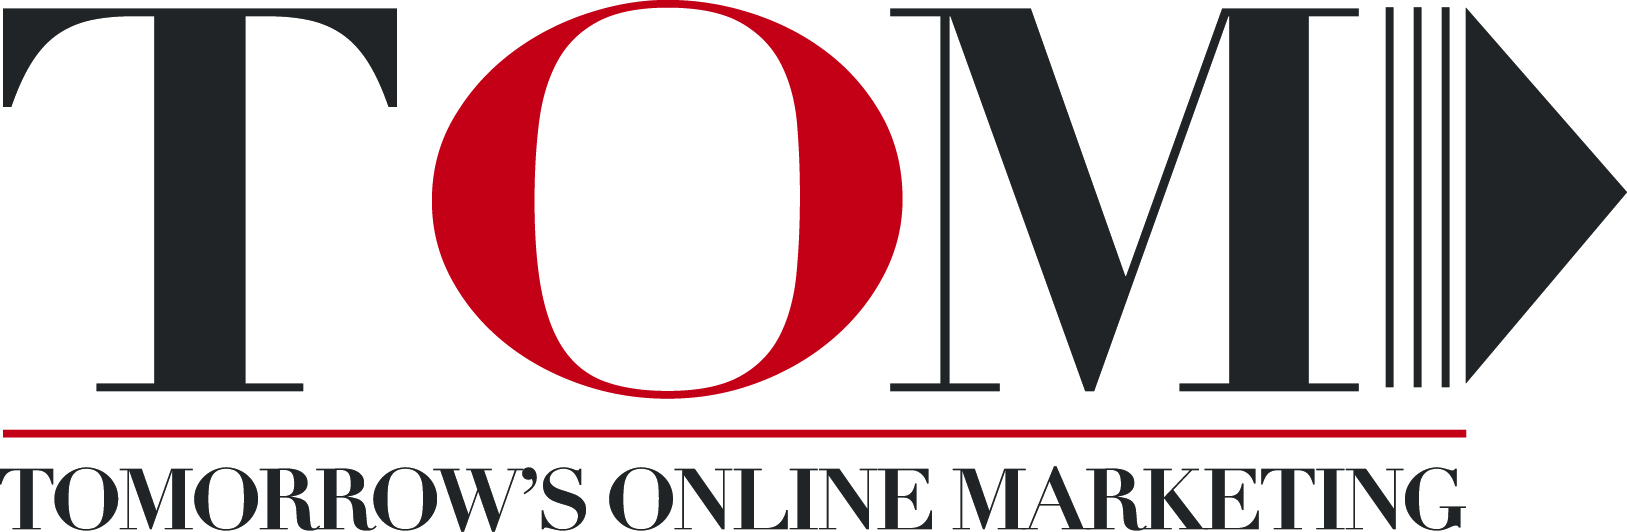 tomorrow's online marketing logo